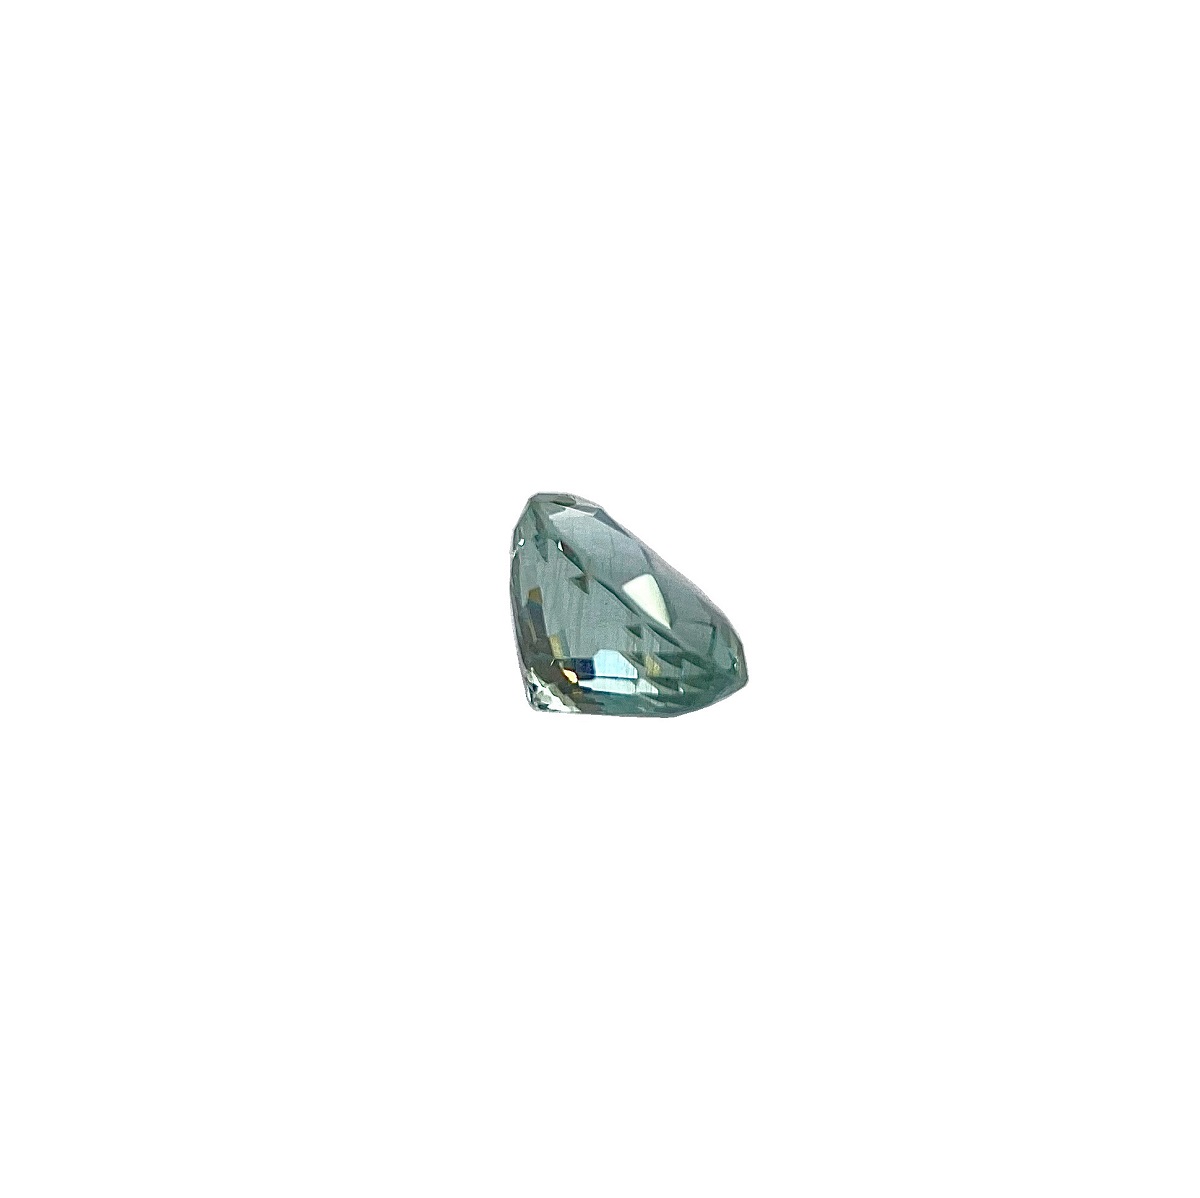 oval-cut-aquamarine-4pt71ct-4